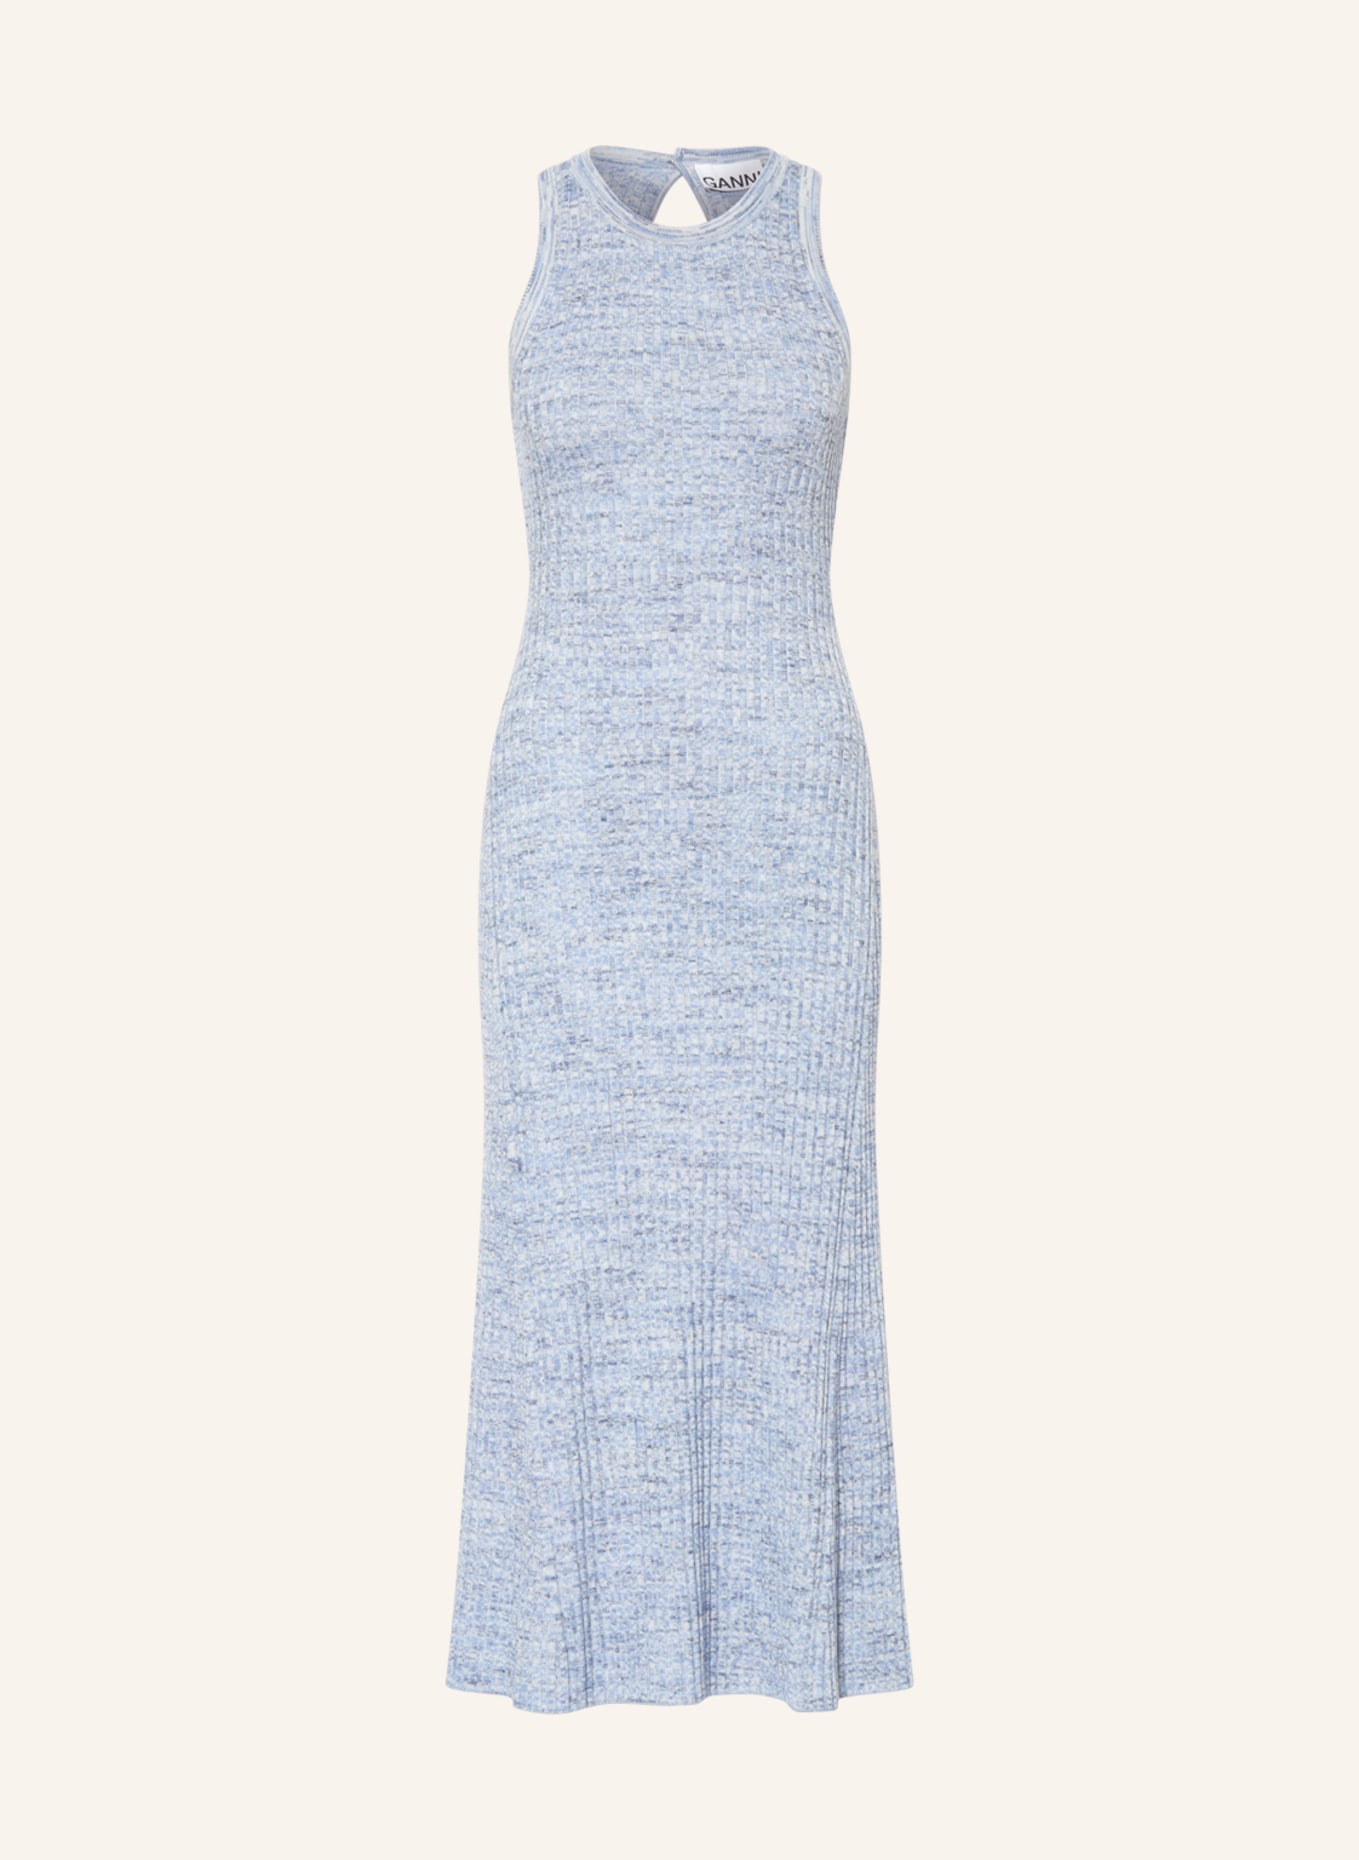 GANNI Knit dress, Color: LIGHT BLUE/ BLUE (Image 1)